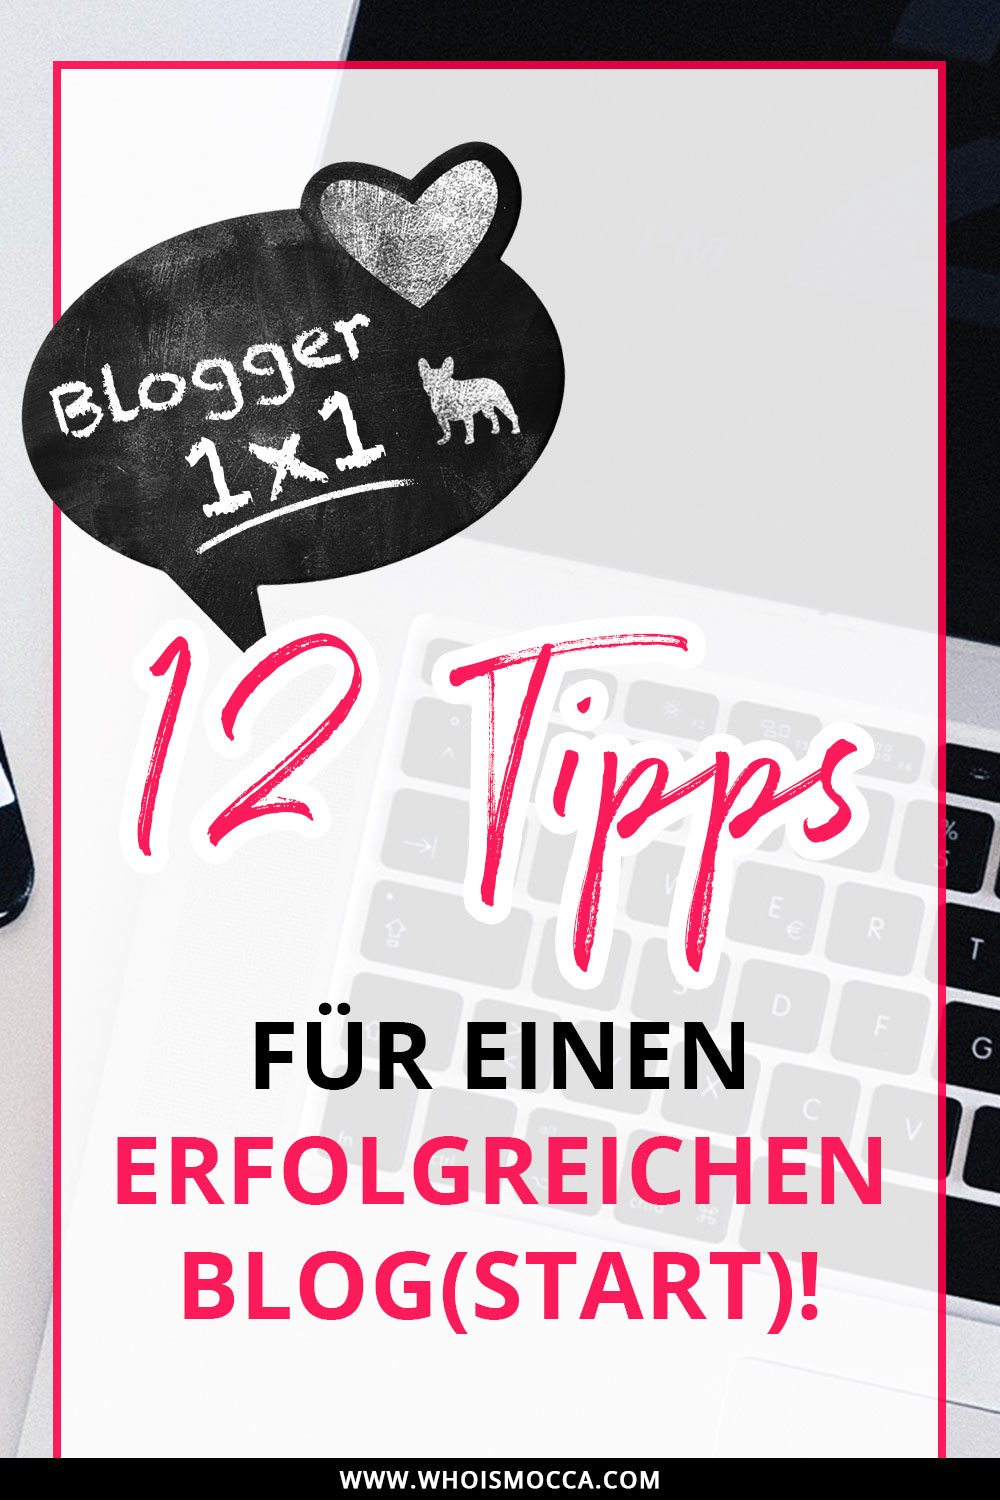 12 Tipps für einen erfolgreichen Blog und sensationellen Blogstart, Blogger Tipps und Tricks, Blogger Tutorials, Fashionblog, Lifestyle Blog, Tutorial Blog, whoismocca.com